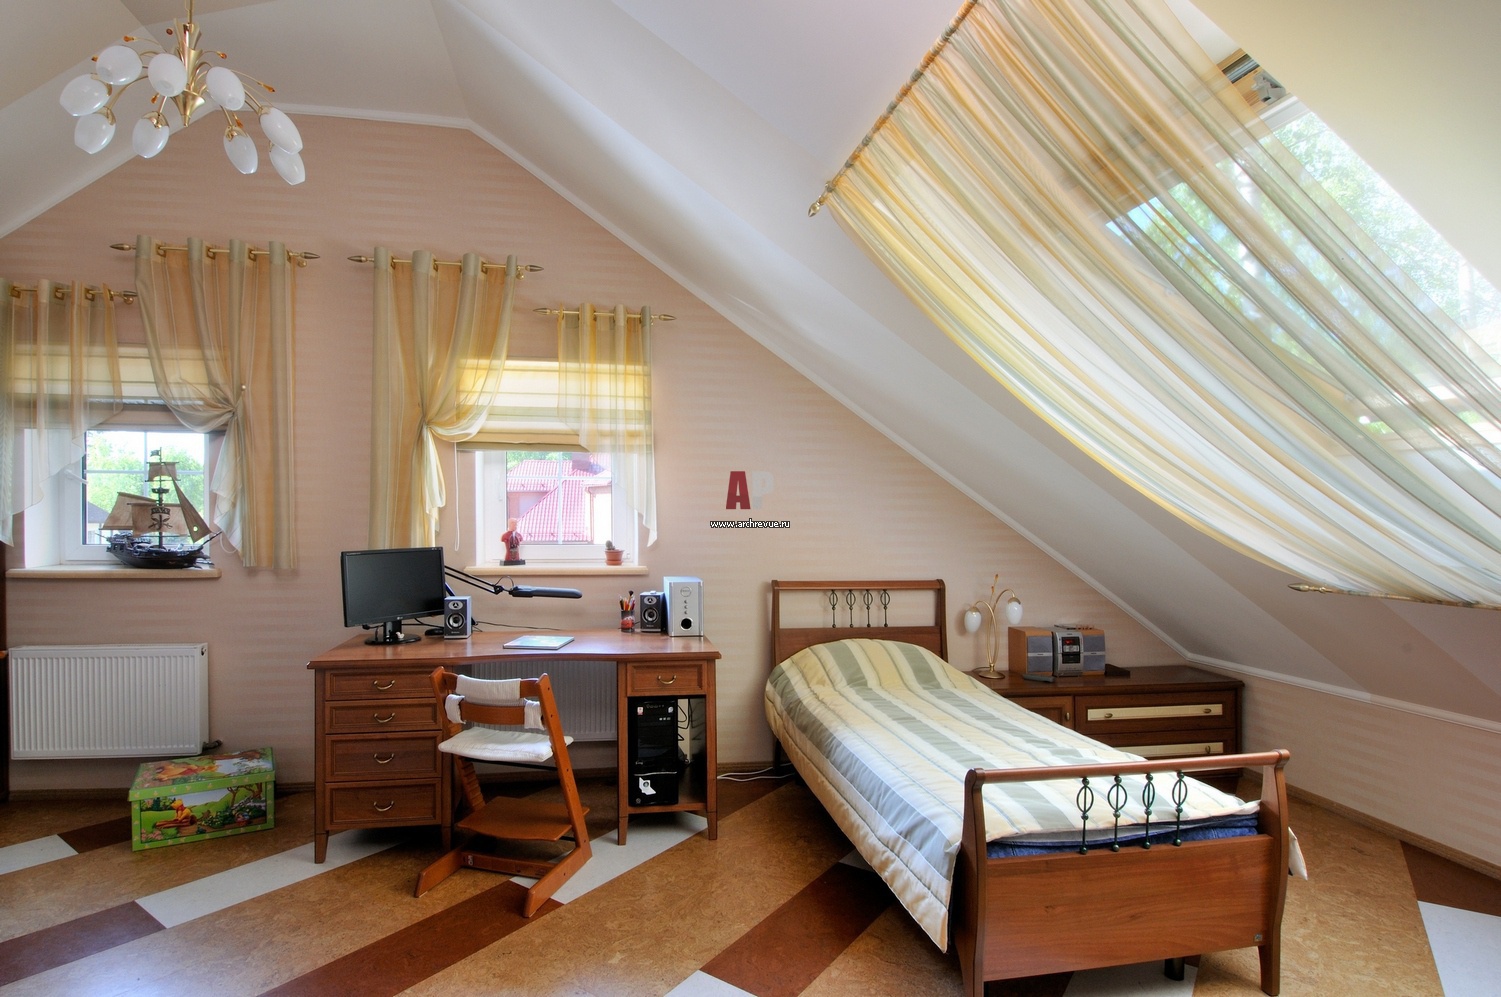 Дизайн детской комнаты в частном доме » Современный дизайн на Vip-1gl.ru
